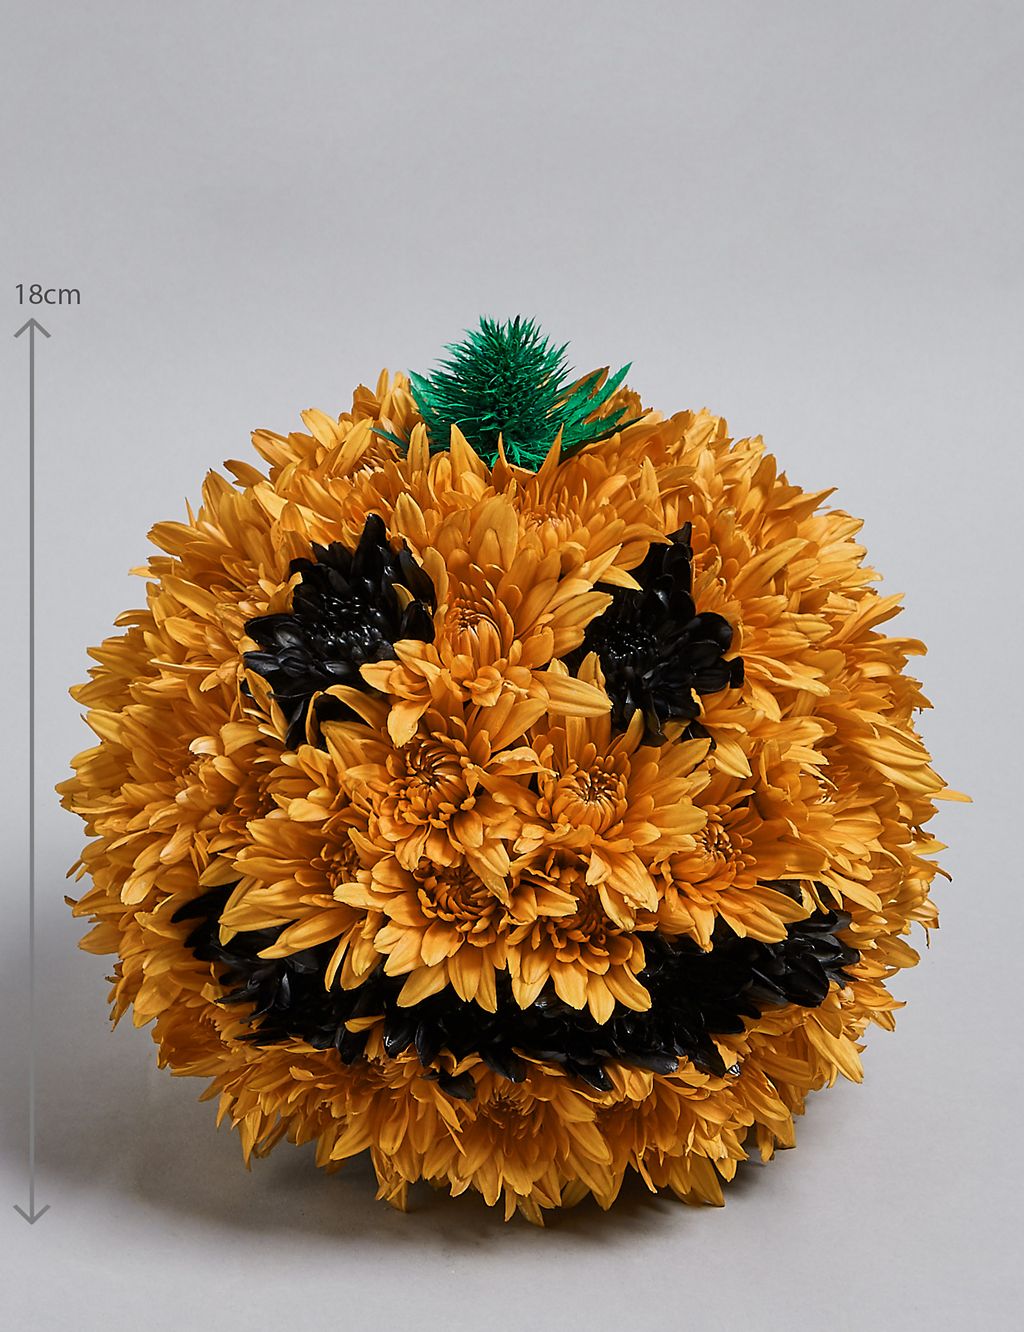 Peter Pumpkin Flower Arrangement 2 of 5